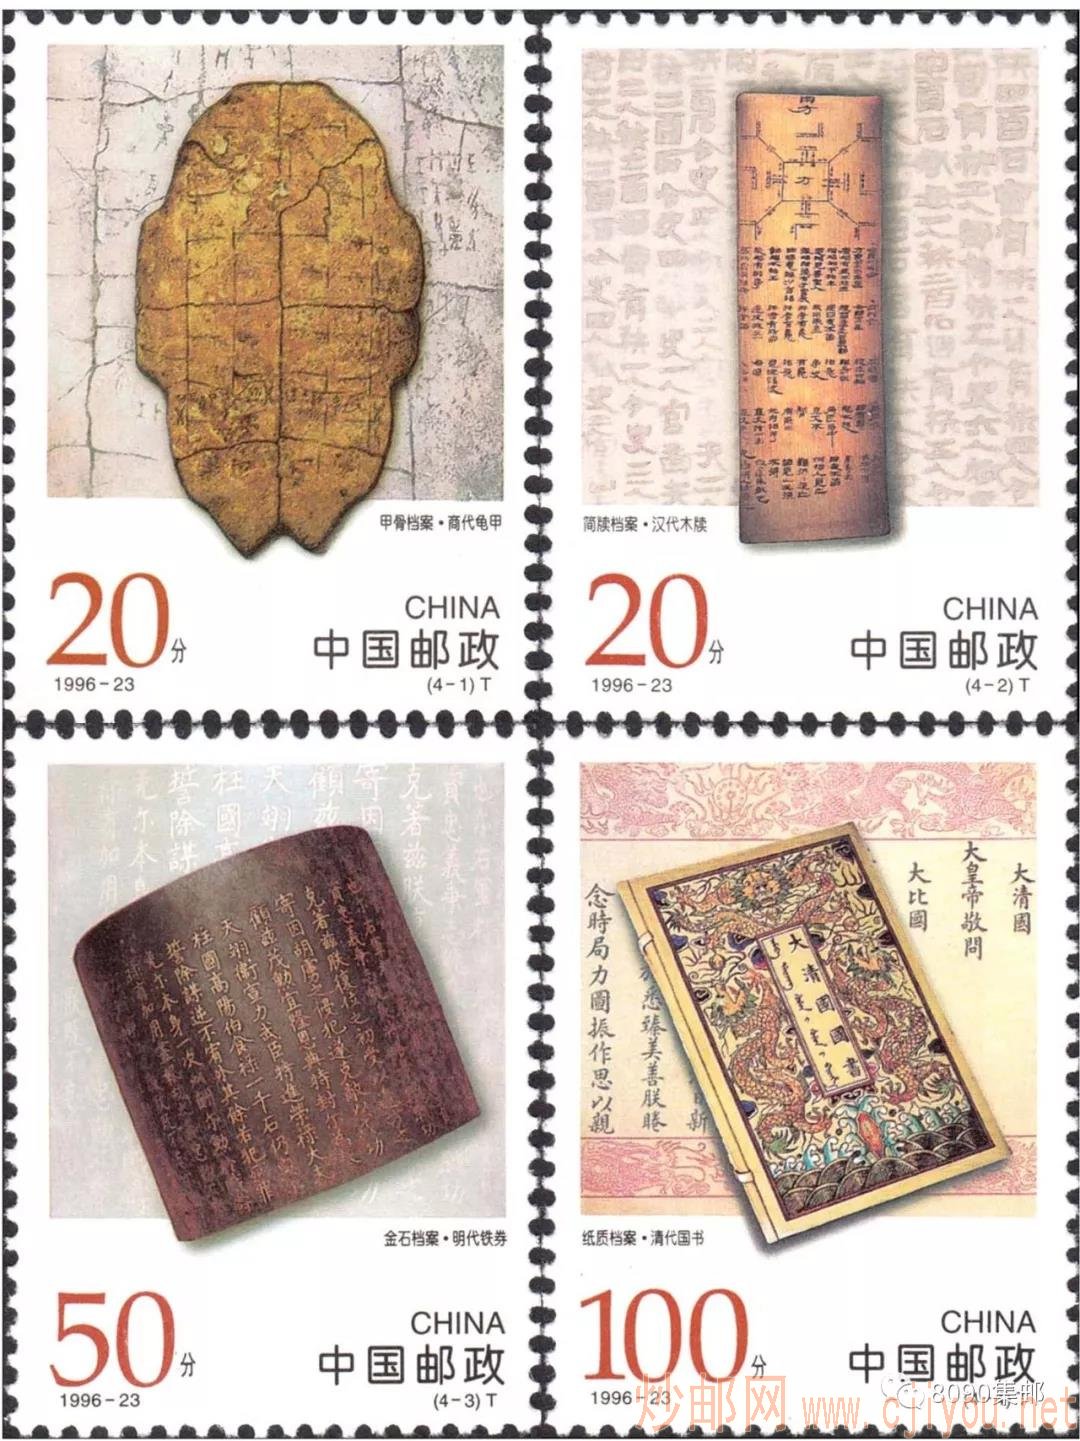 ▲1996-23《中国古代档案》邮票